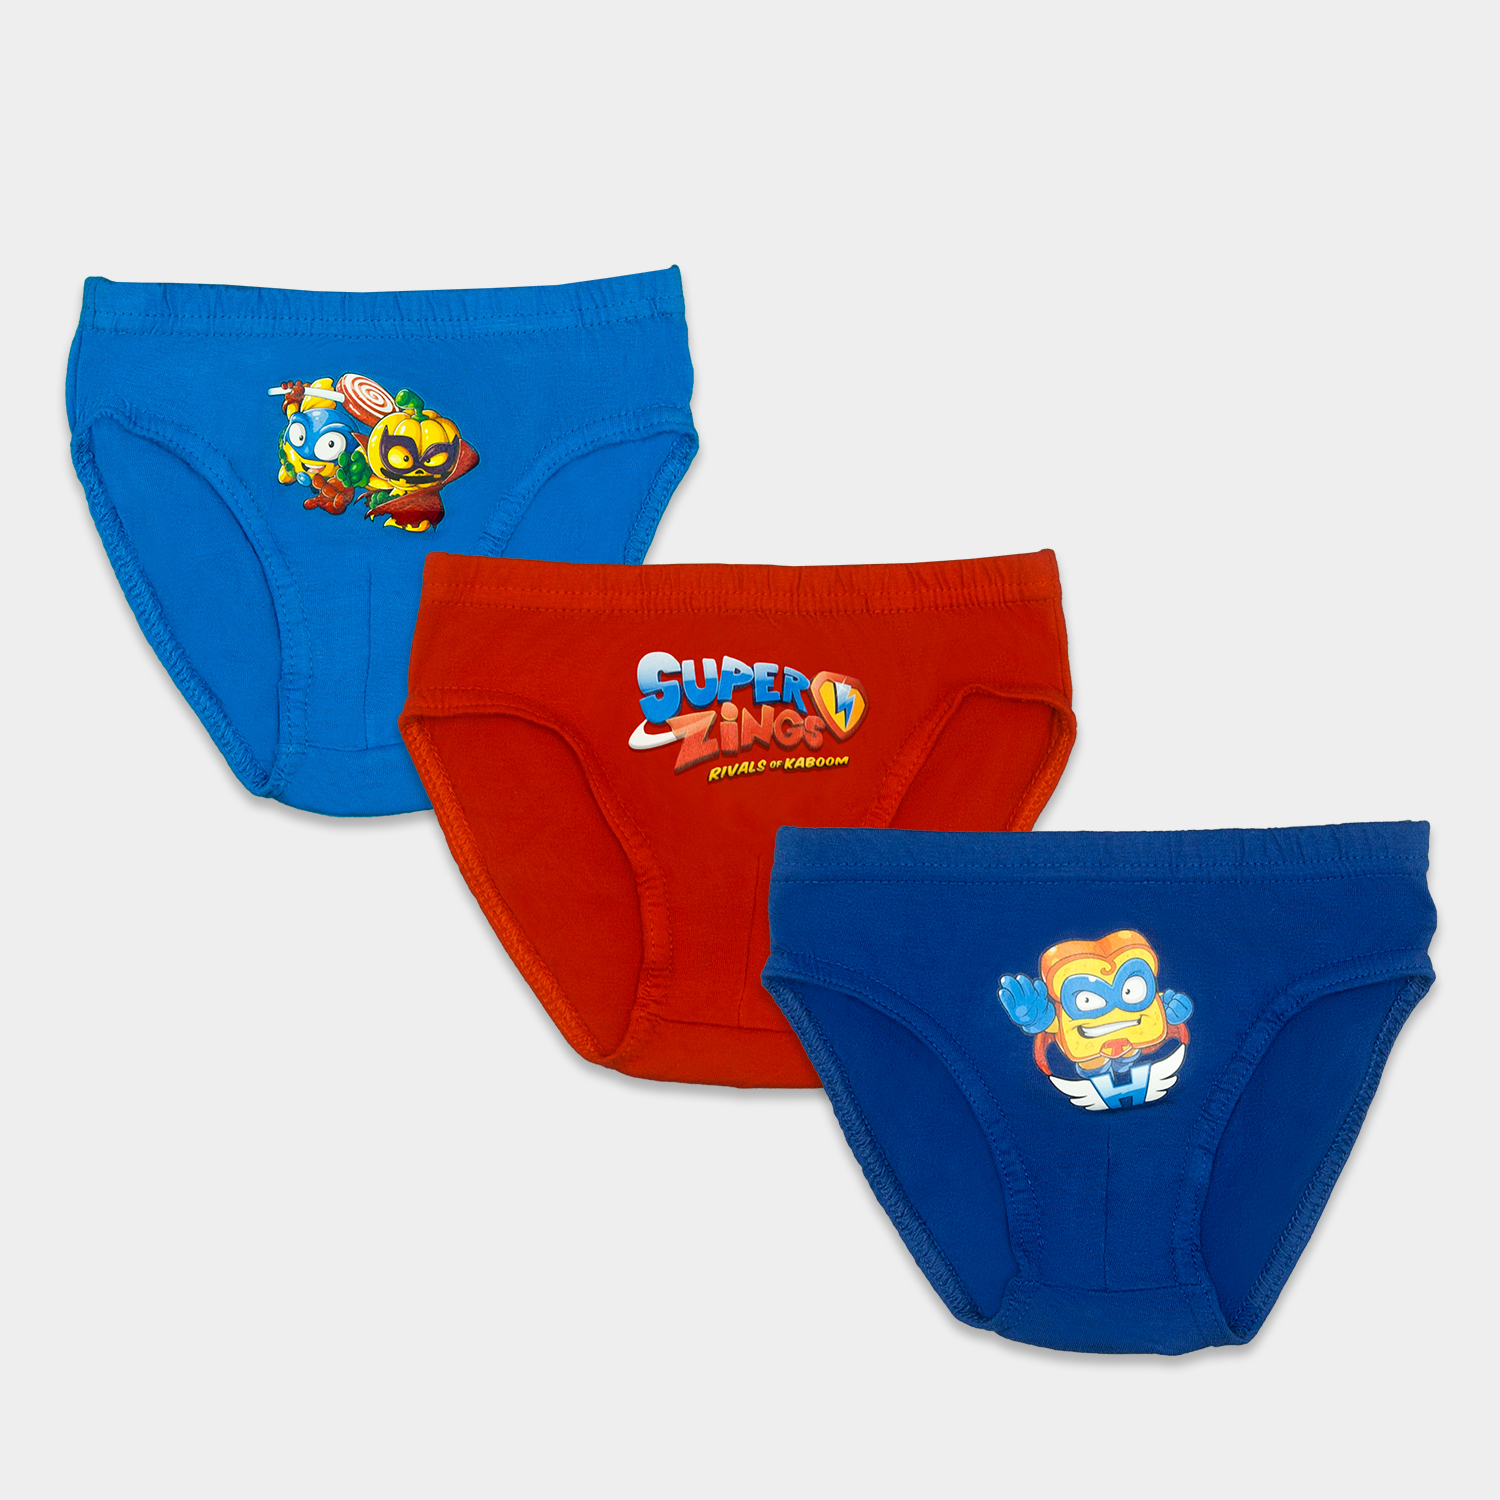 calzoncillos pack de 3 superzings para niño tres colores azul rojo y marino